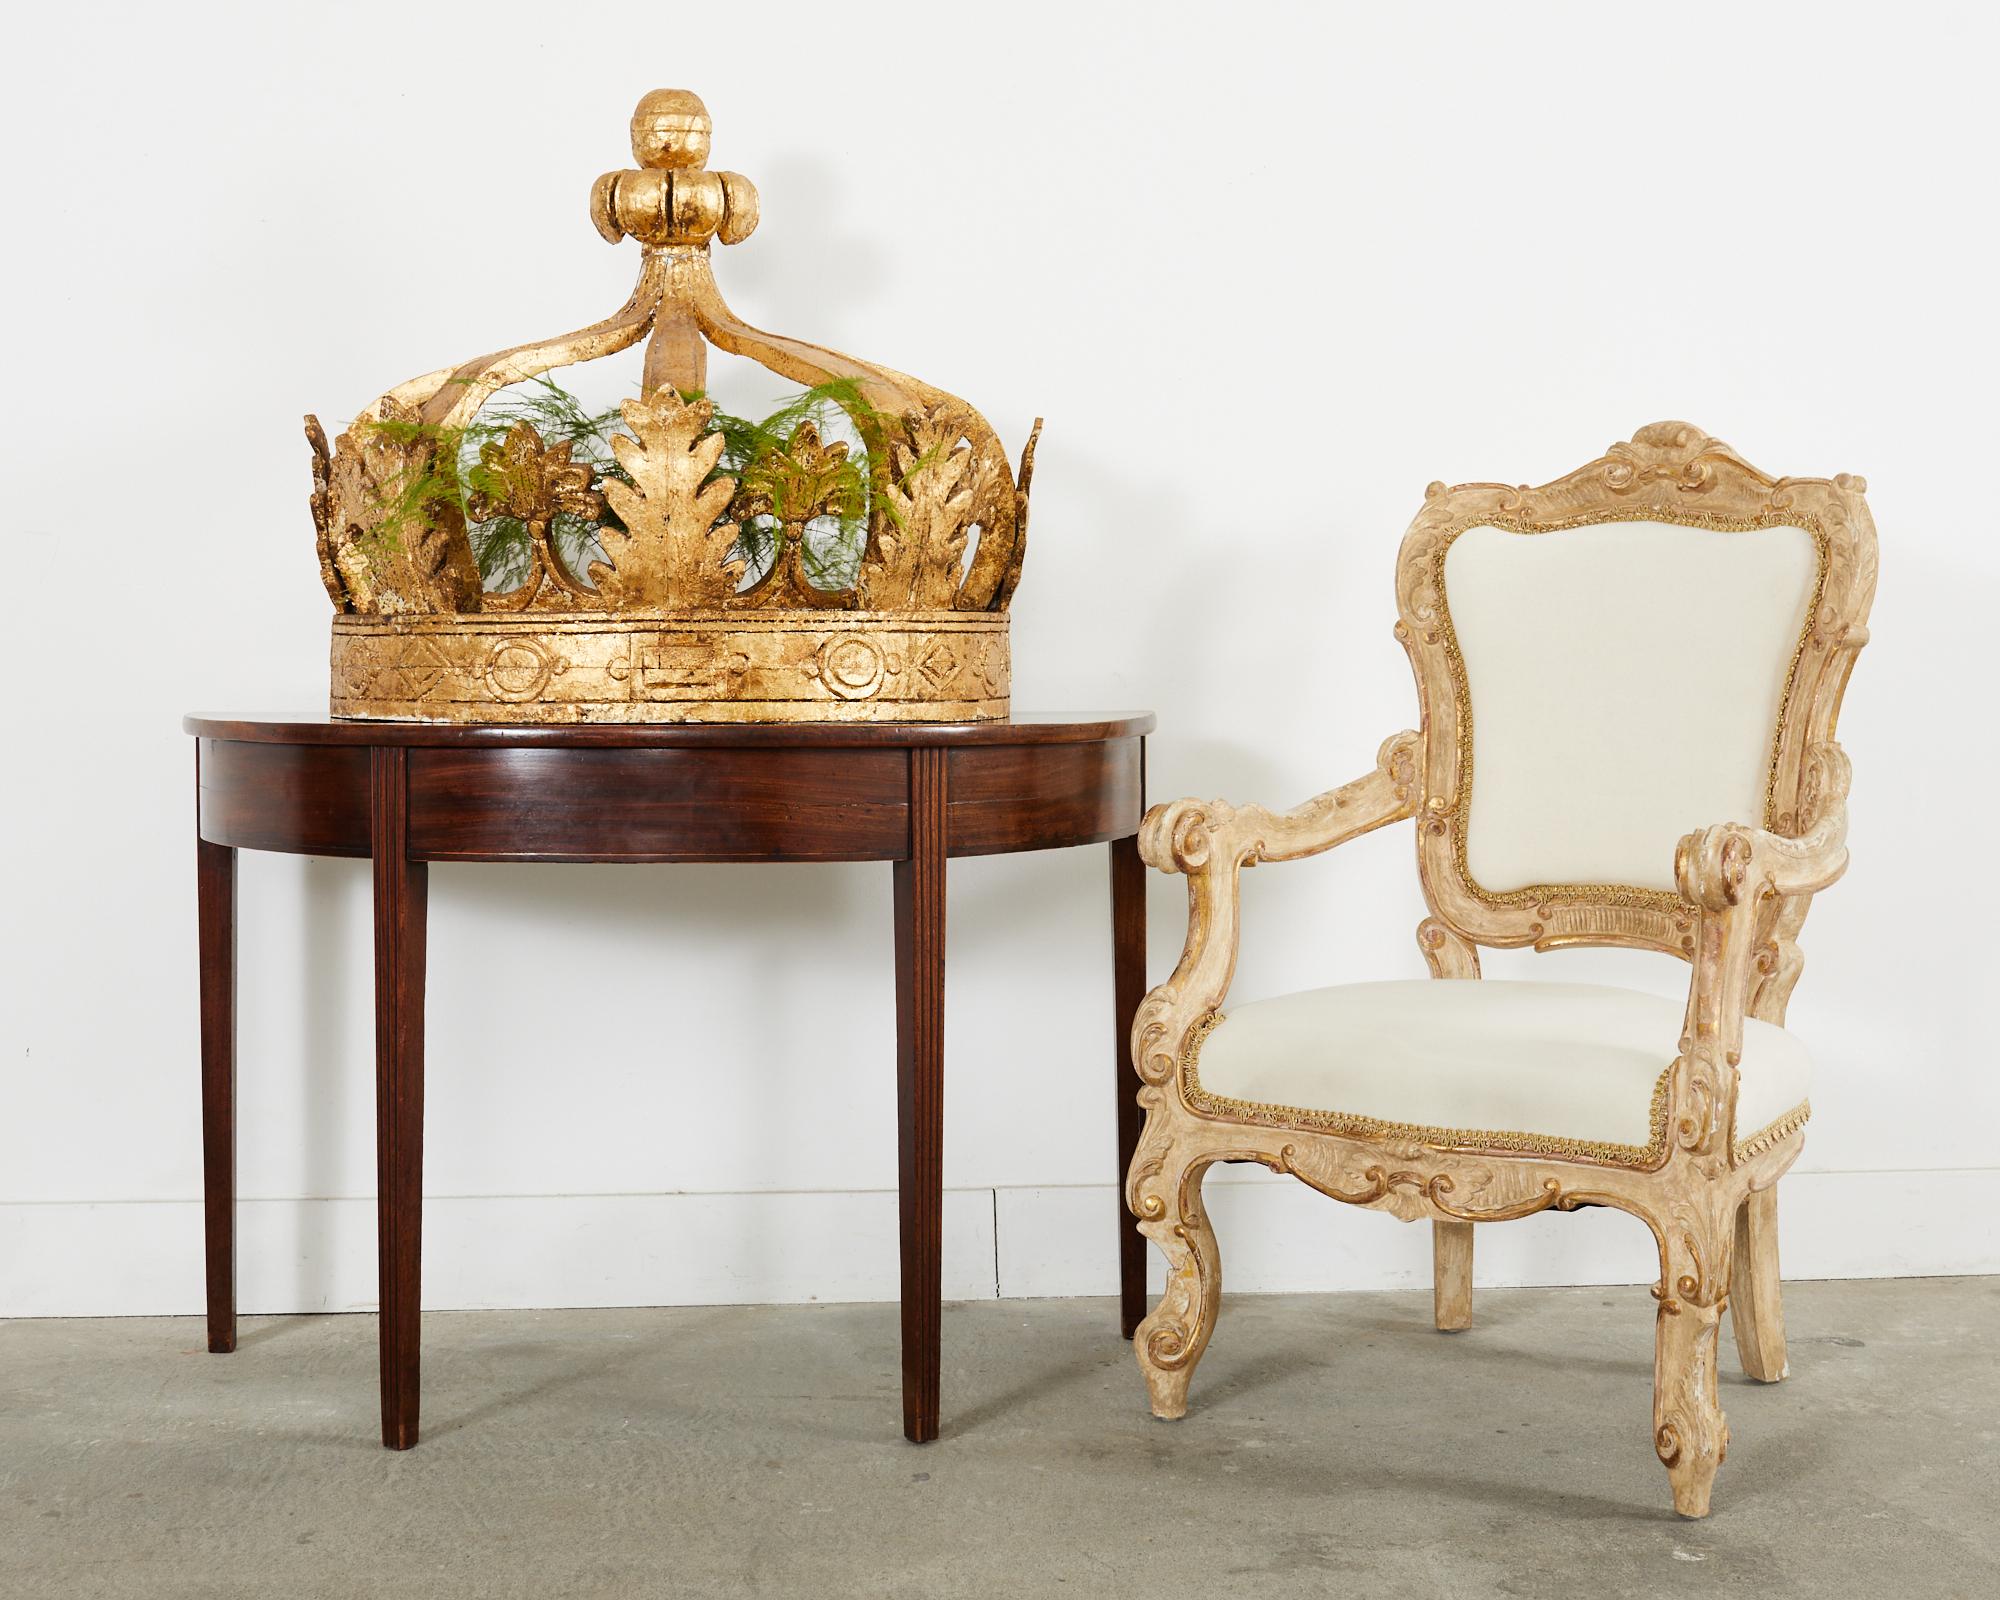 Dramatique paire de grandes couronnes de lit italiennes du XIXe siècle, réalisées dans le goût baroque. Les corons présentent des cadres en forme de demi-lune rehaussés de feuilles d'or et décorés de délicates feuilles d'acanthe et de fleurs de lys